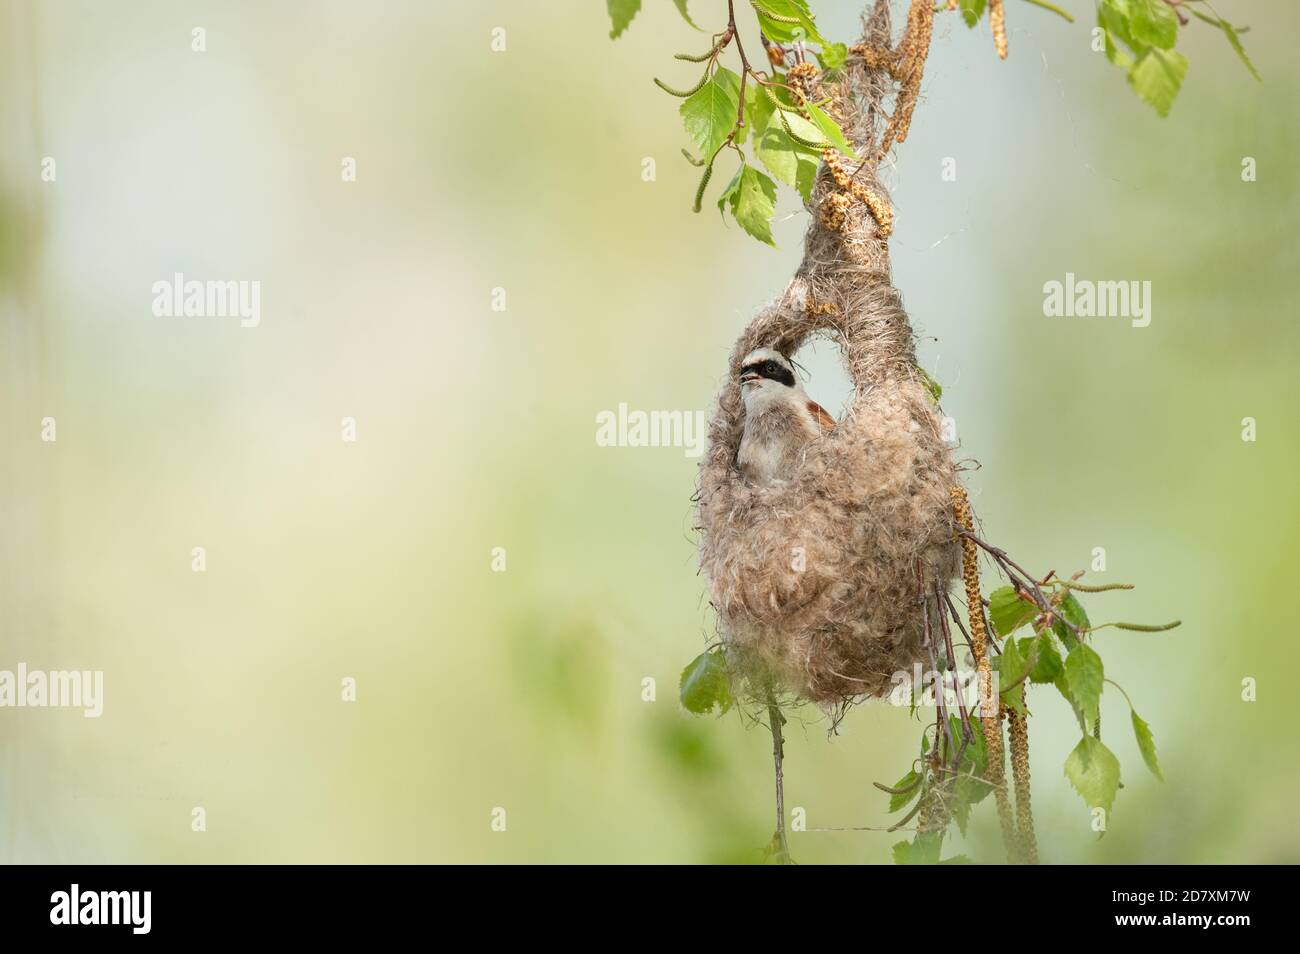 Die Beutelmeise (Remiz pendulinus) baut ein Nest indem sie Fäden vom Schilf abschält um damit 3 Äste zu verbinden.Auf diese Äste baut sie ihren Beutel Stock Photo